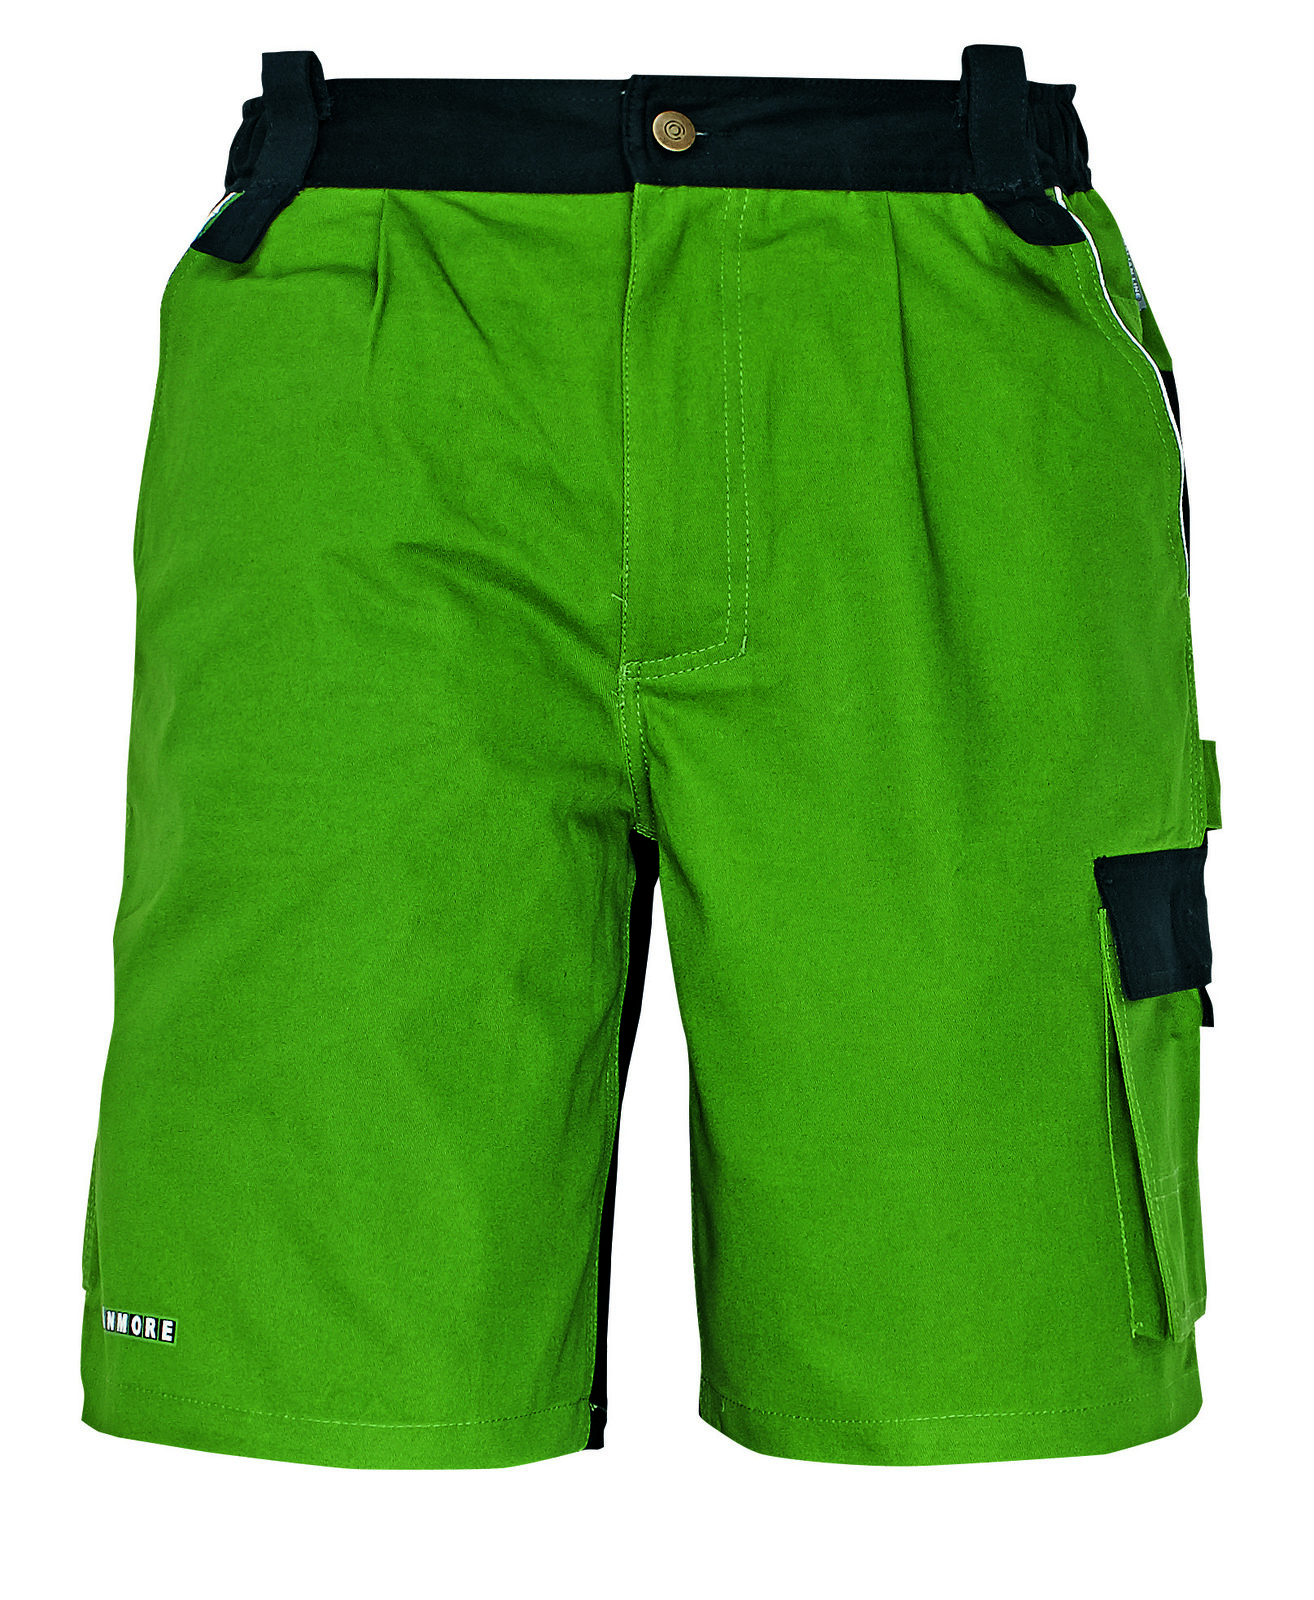 Bavlnené montérkové šortky Stanmore - veľkosť: 48, farba: zelená